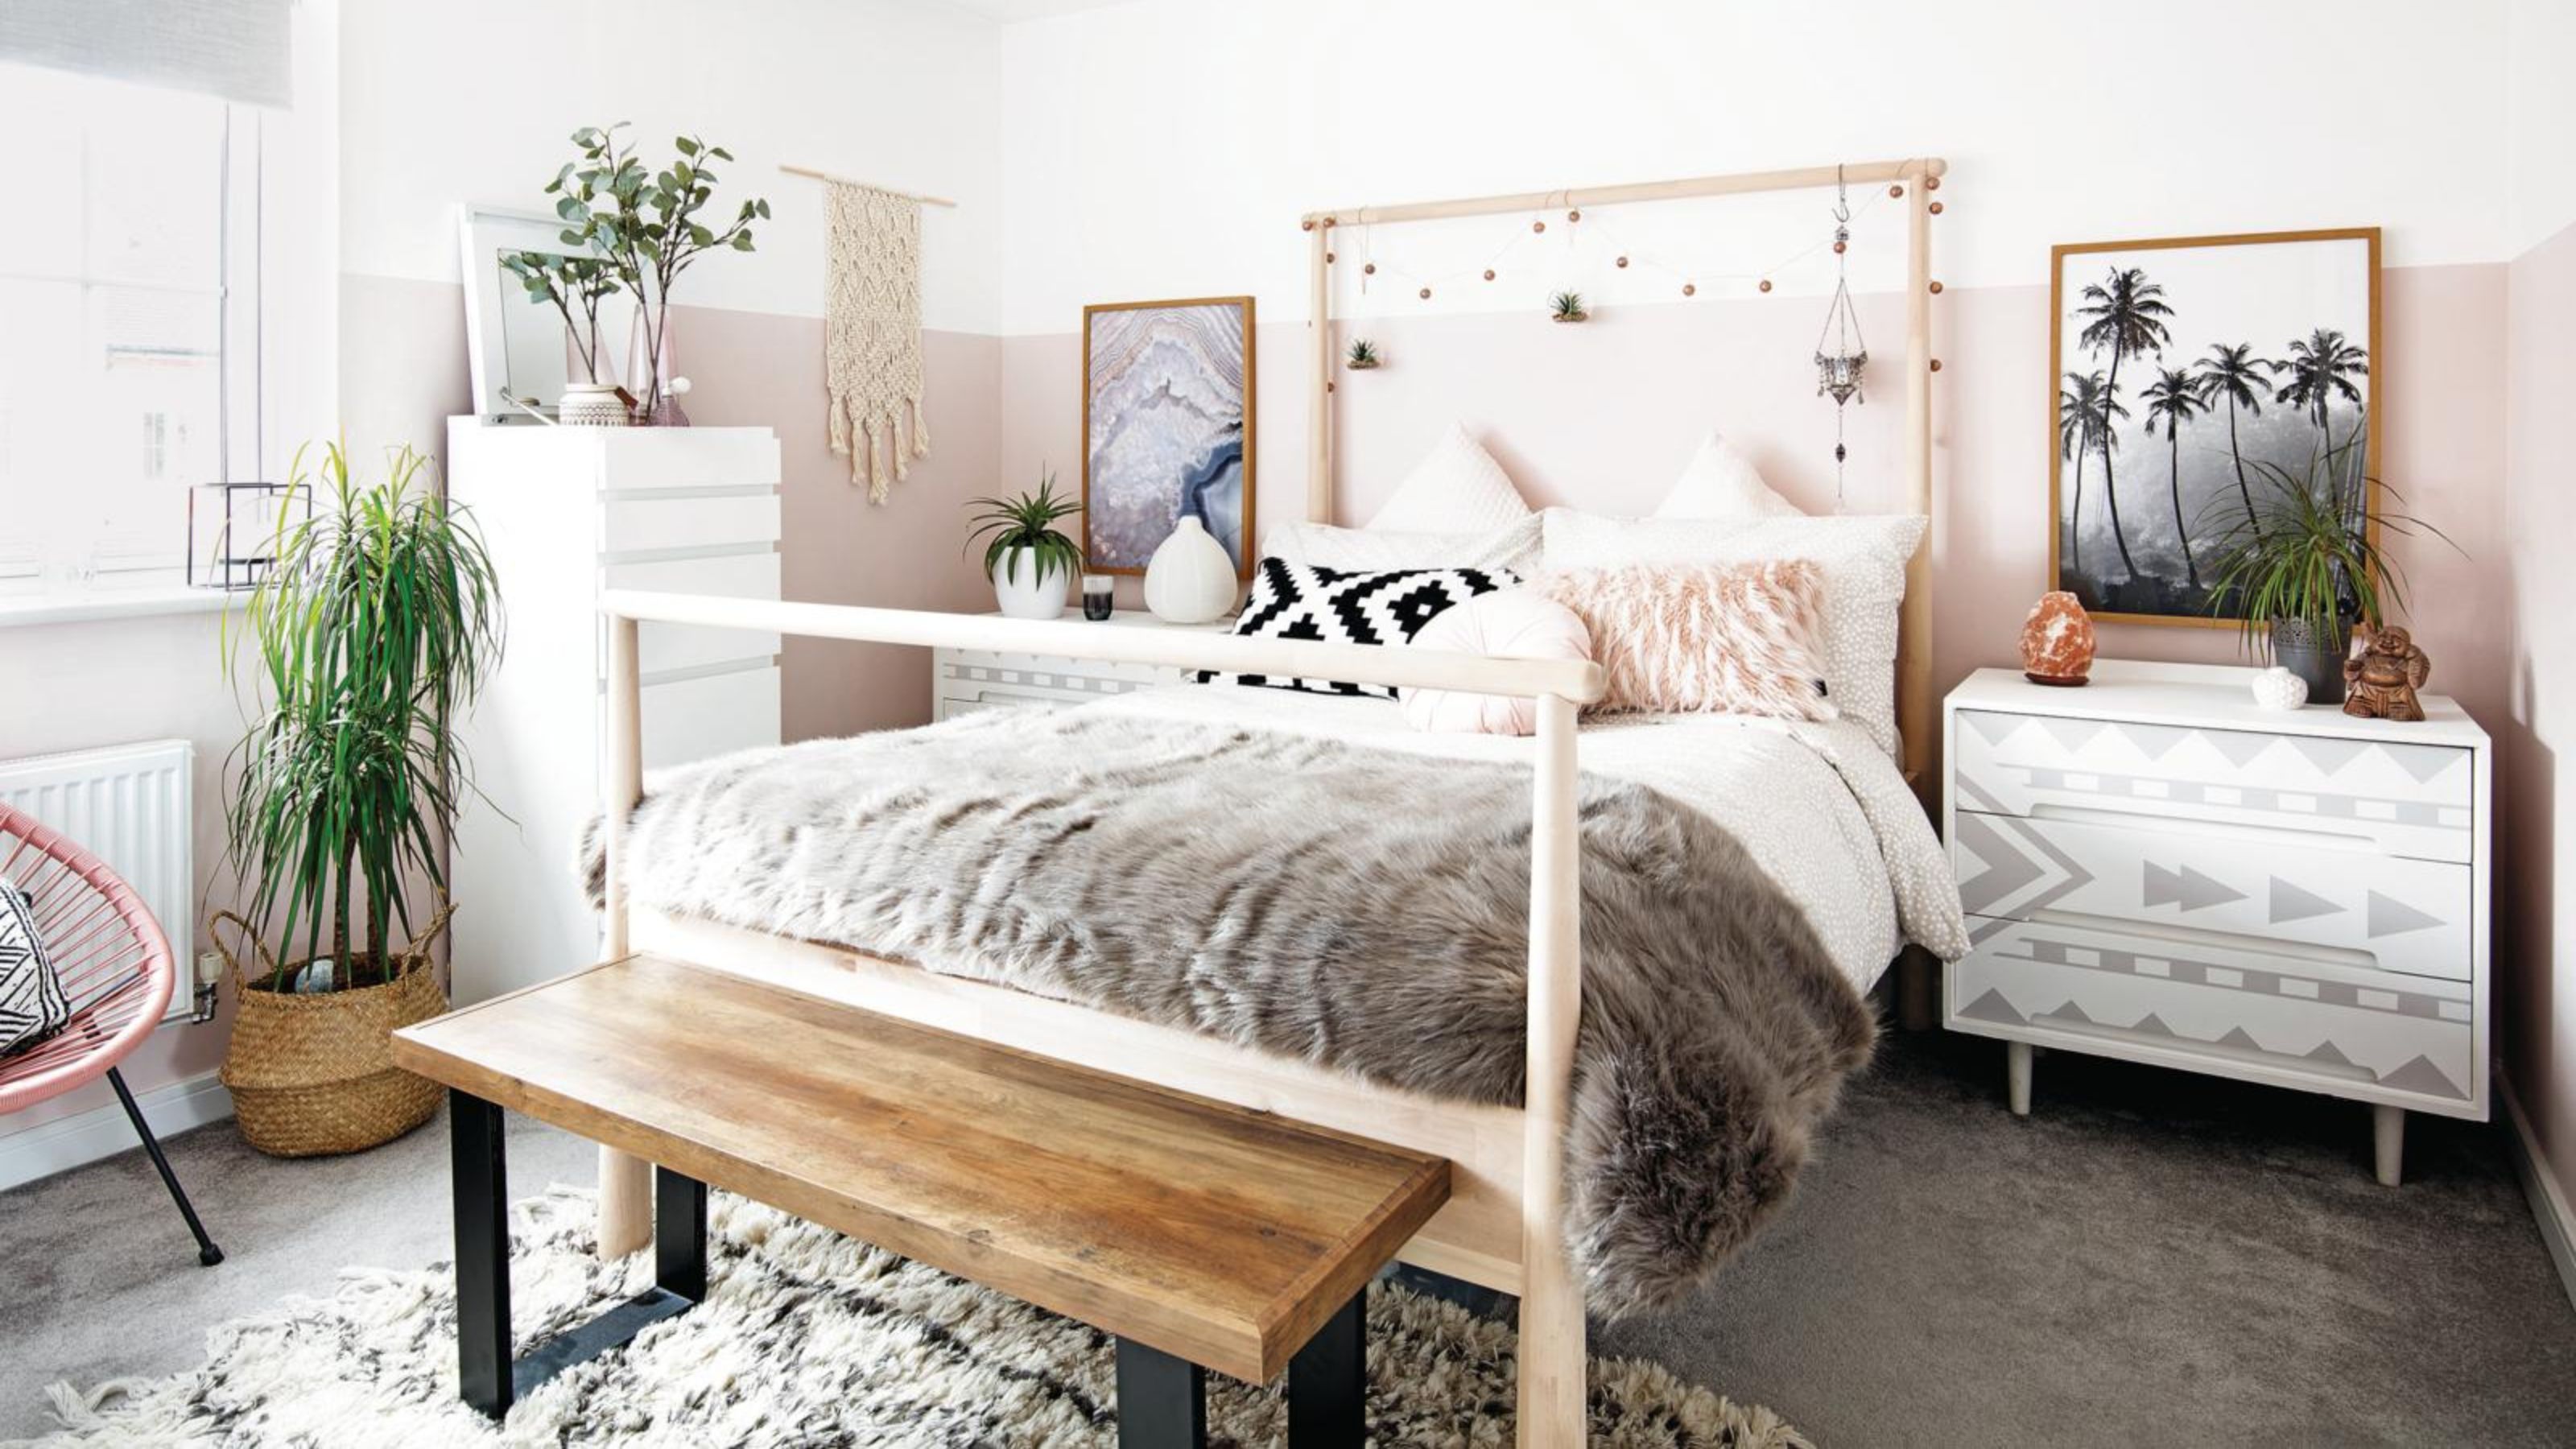 21 Aesthetic Bedroom Ideas - Best Aesthetic Bedroom Decor Photos  Teen bedroom  decor, Room inspiration bedroom, Aesthetic bedroom